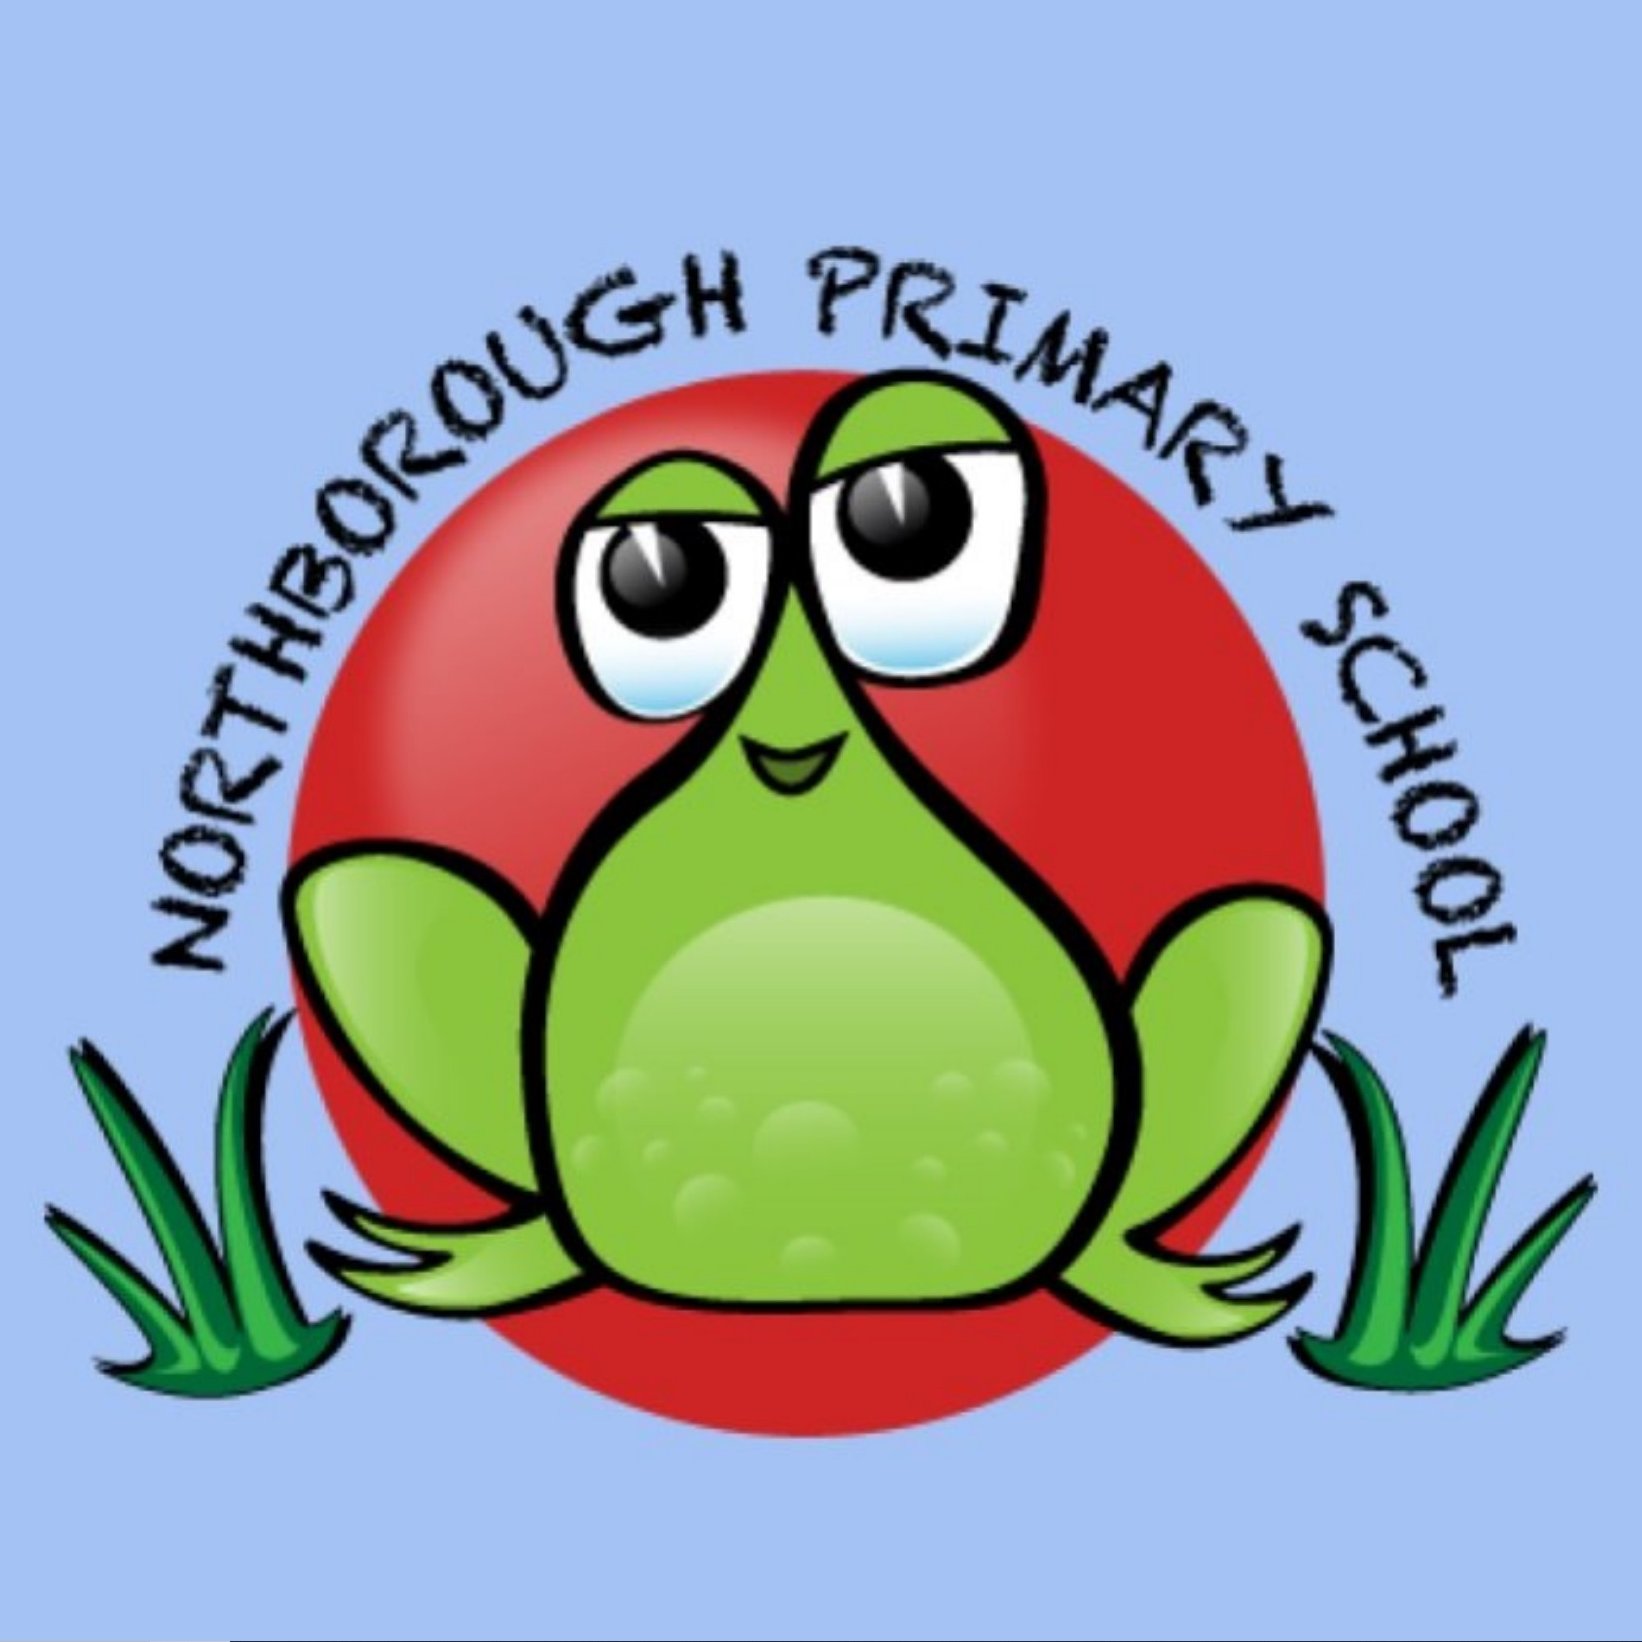 Northborough Primary School